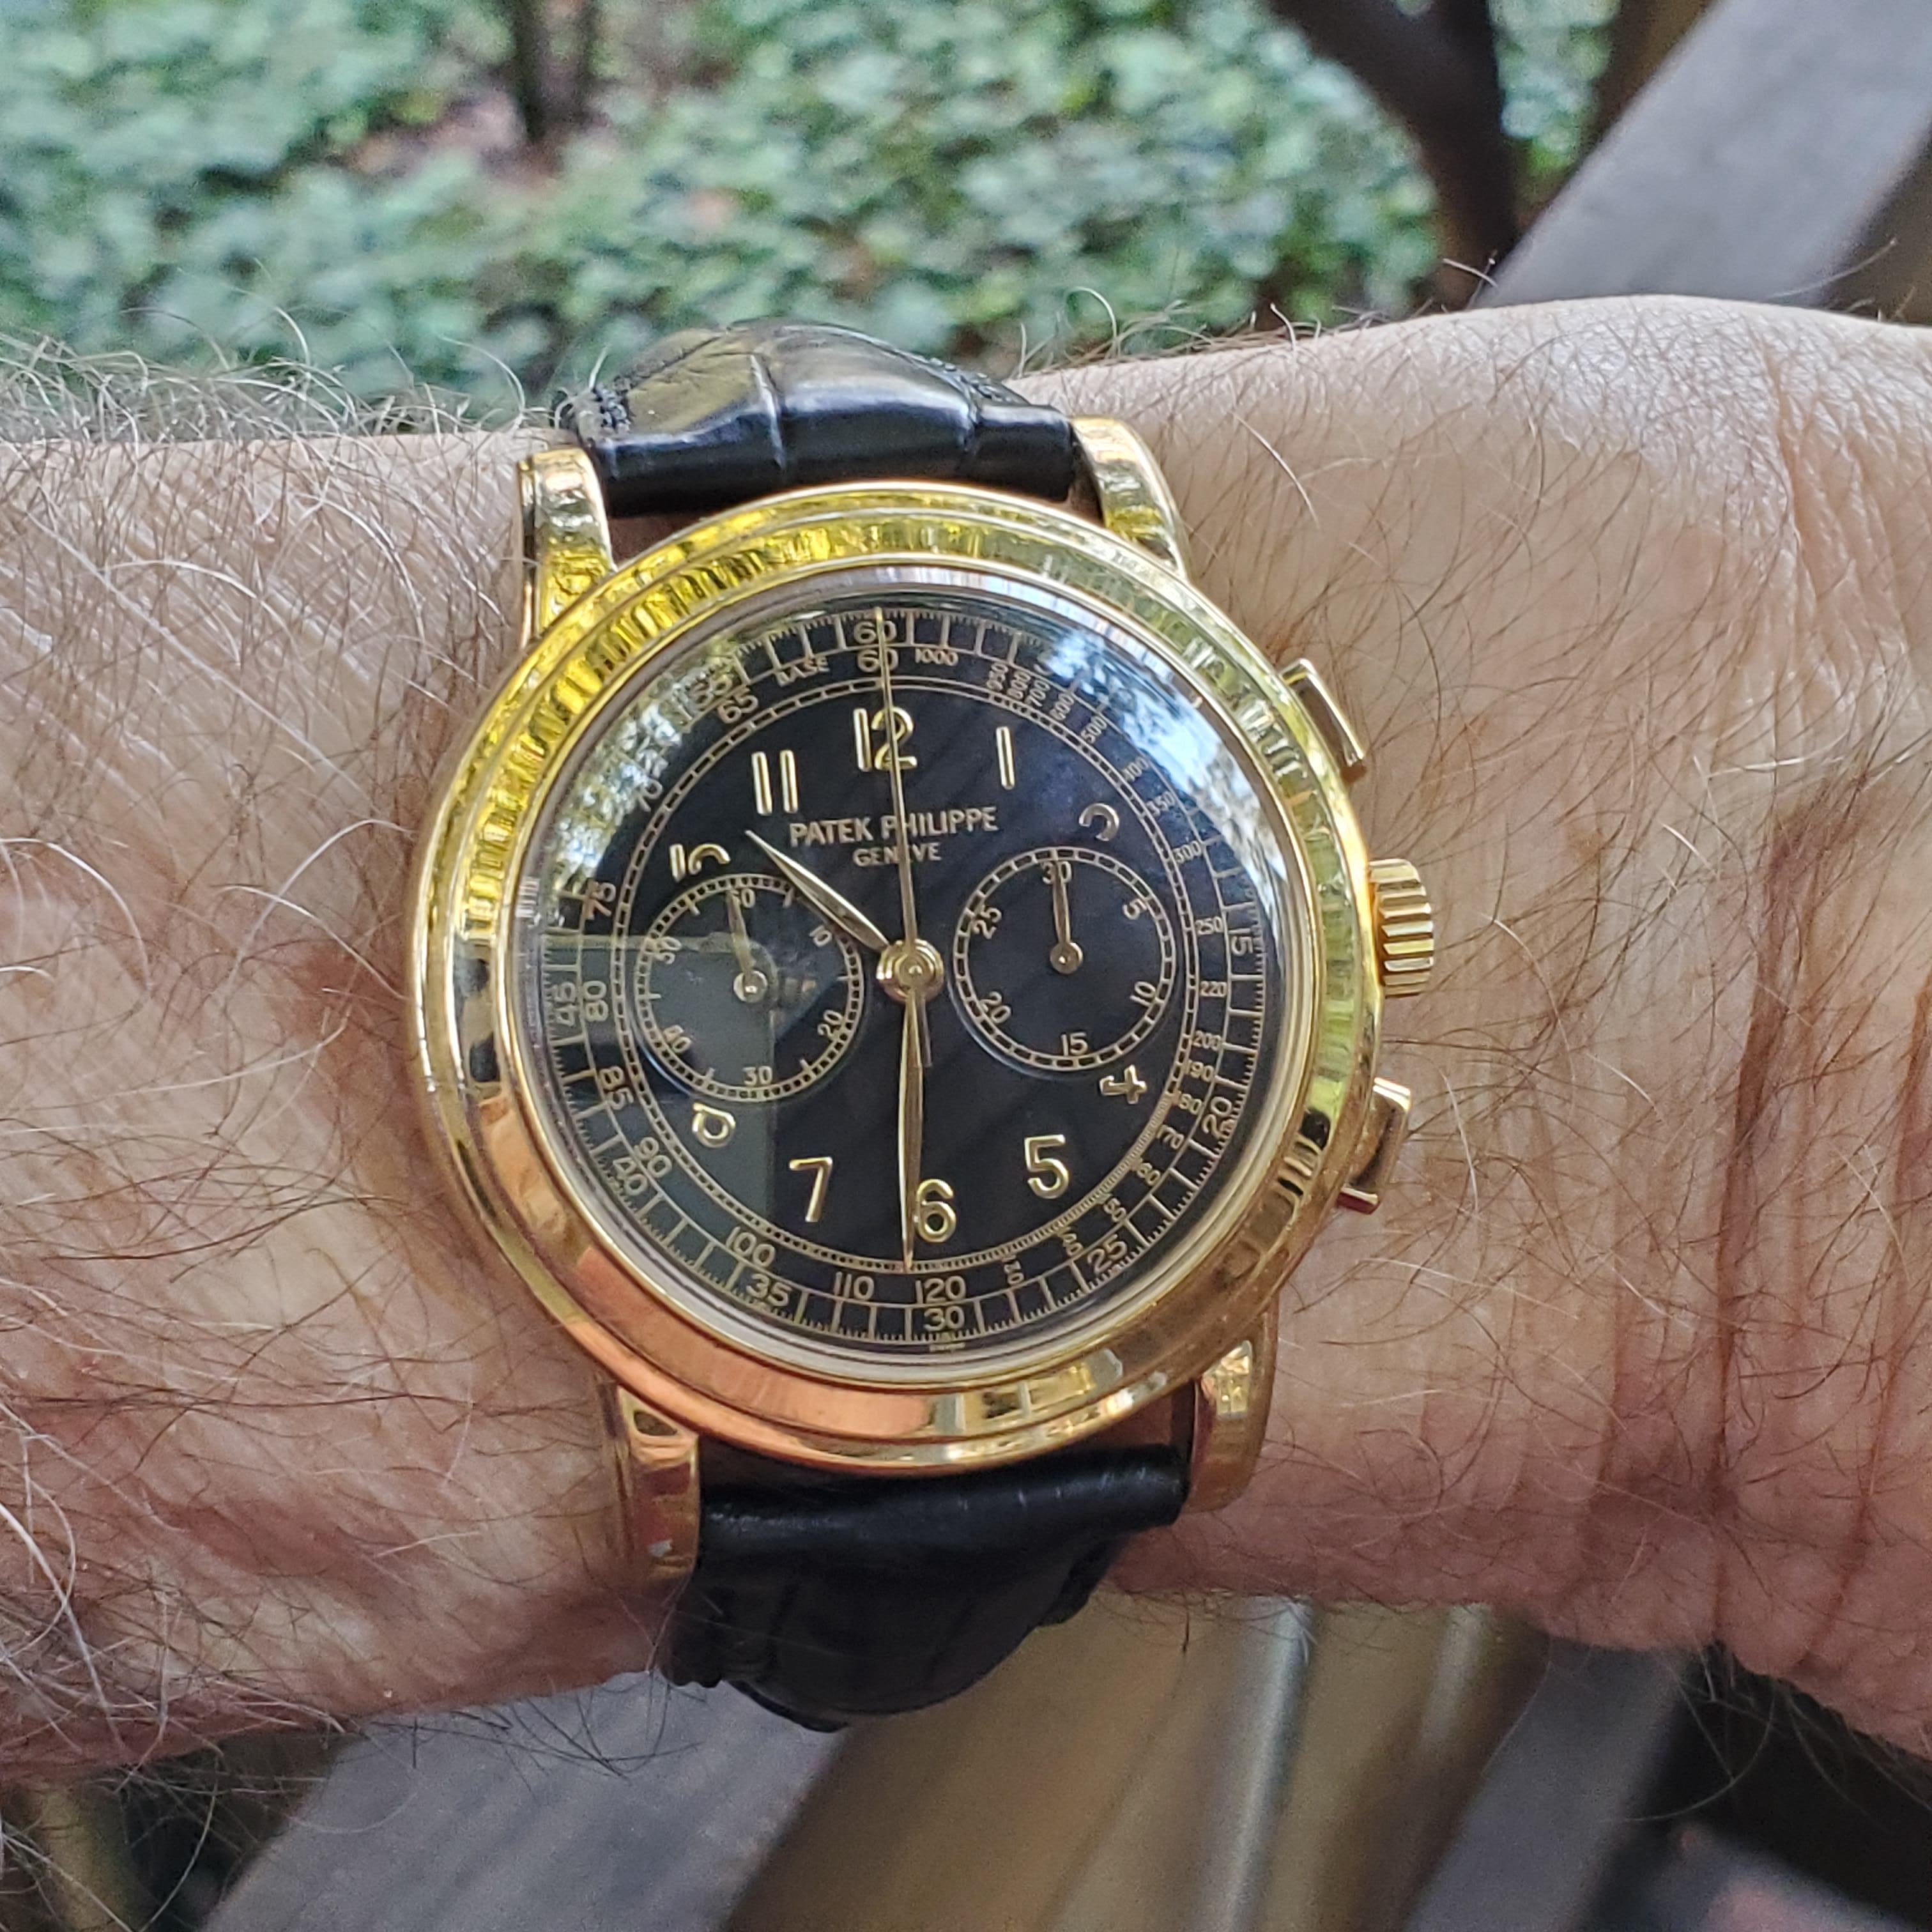 Patek Philippe Ref# 5070J-001  Cet exemplaire est en excellent état et présente des poinçons très nets.

La montre chronographe 5070J à remontage manuel est dotée d'un boîtier de 42 mm. Il s'agit d'un modèle en or jaune avec cadran noir et boucle